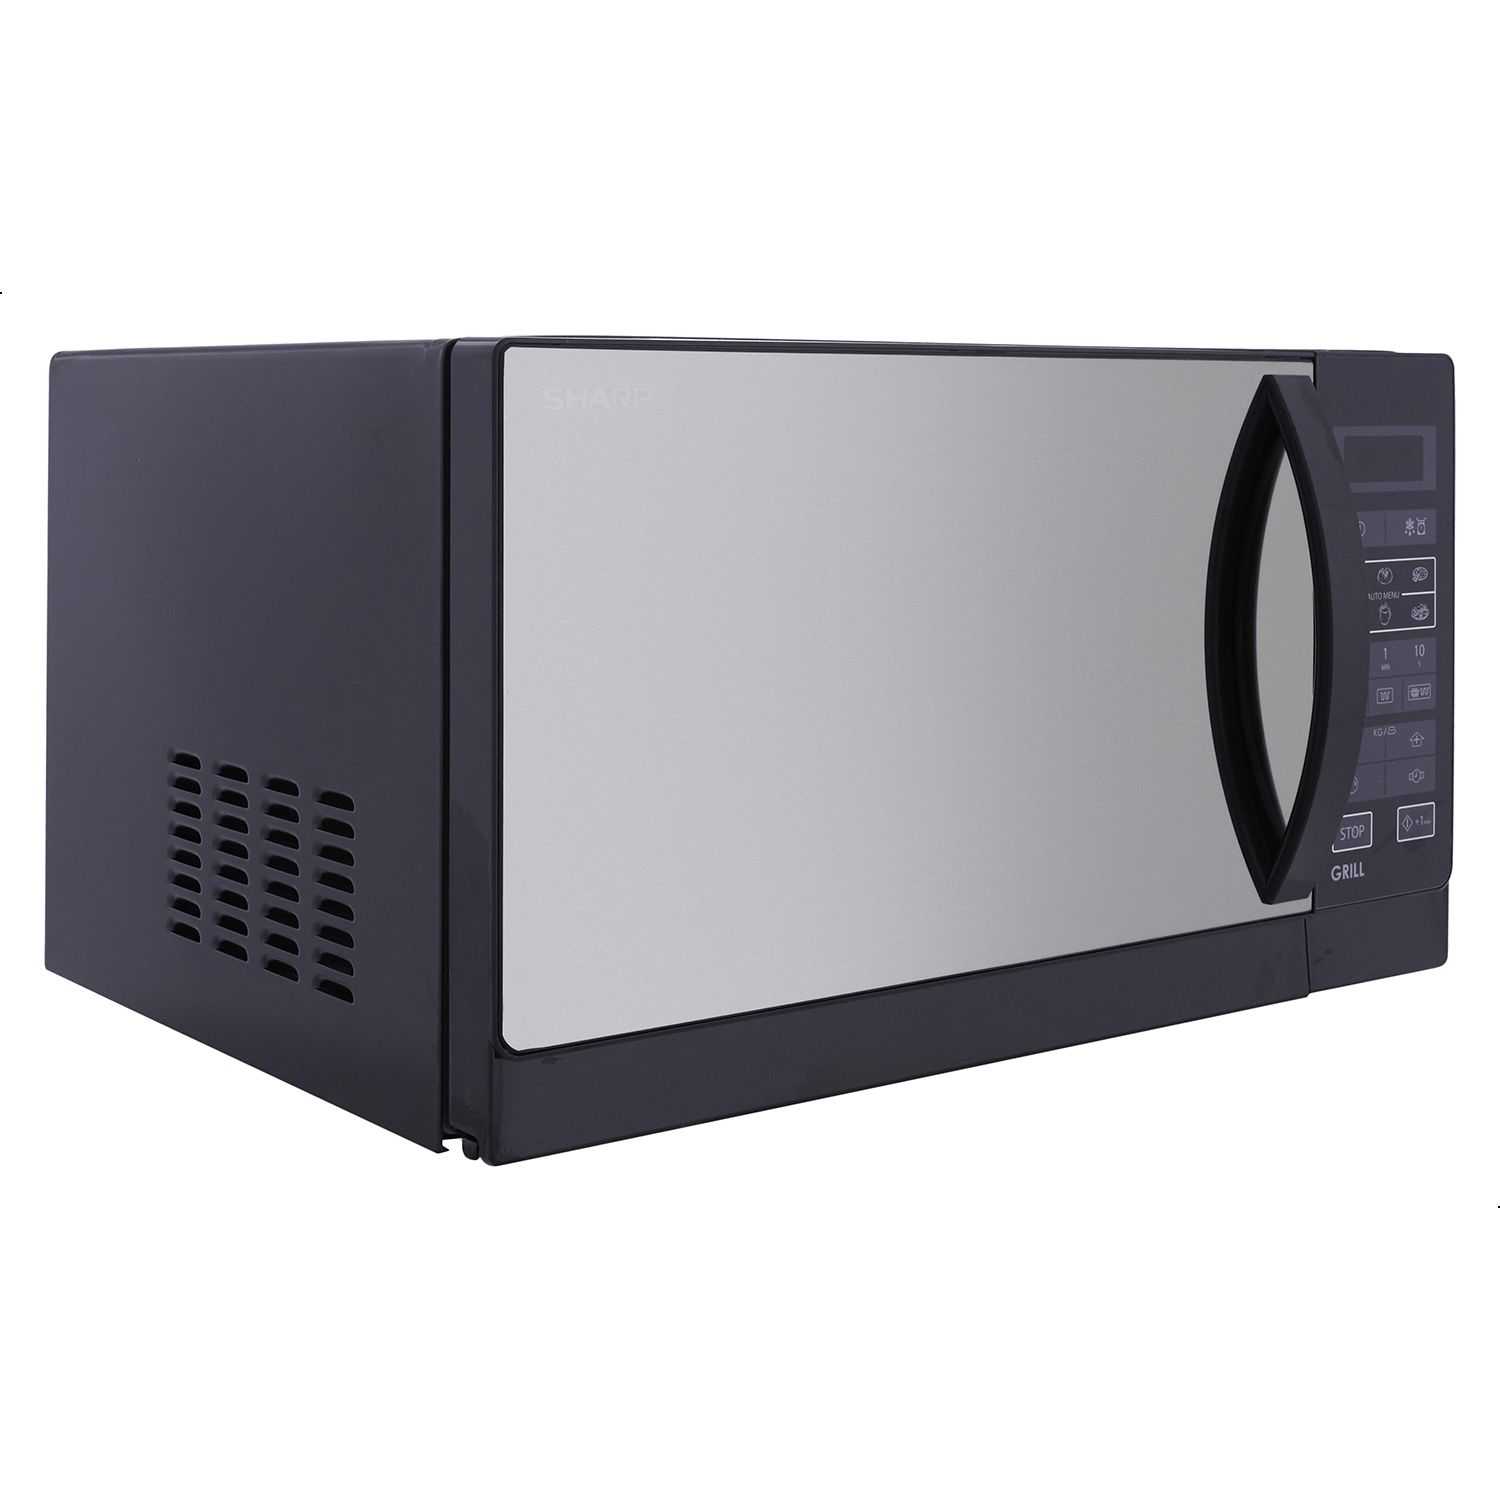 R-750MR(K) Microwave With Grill – 25 L – 900 Watt – Black – Radio ...